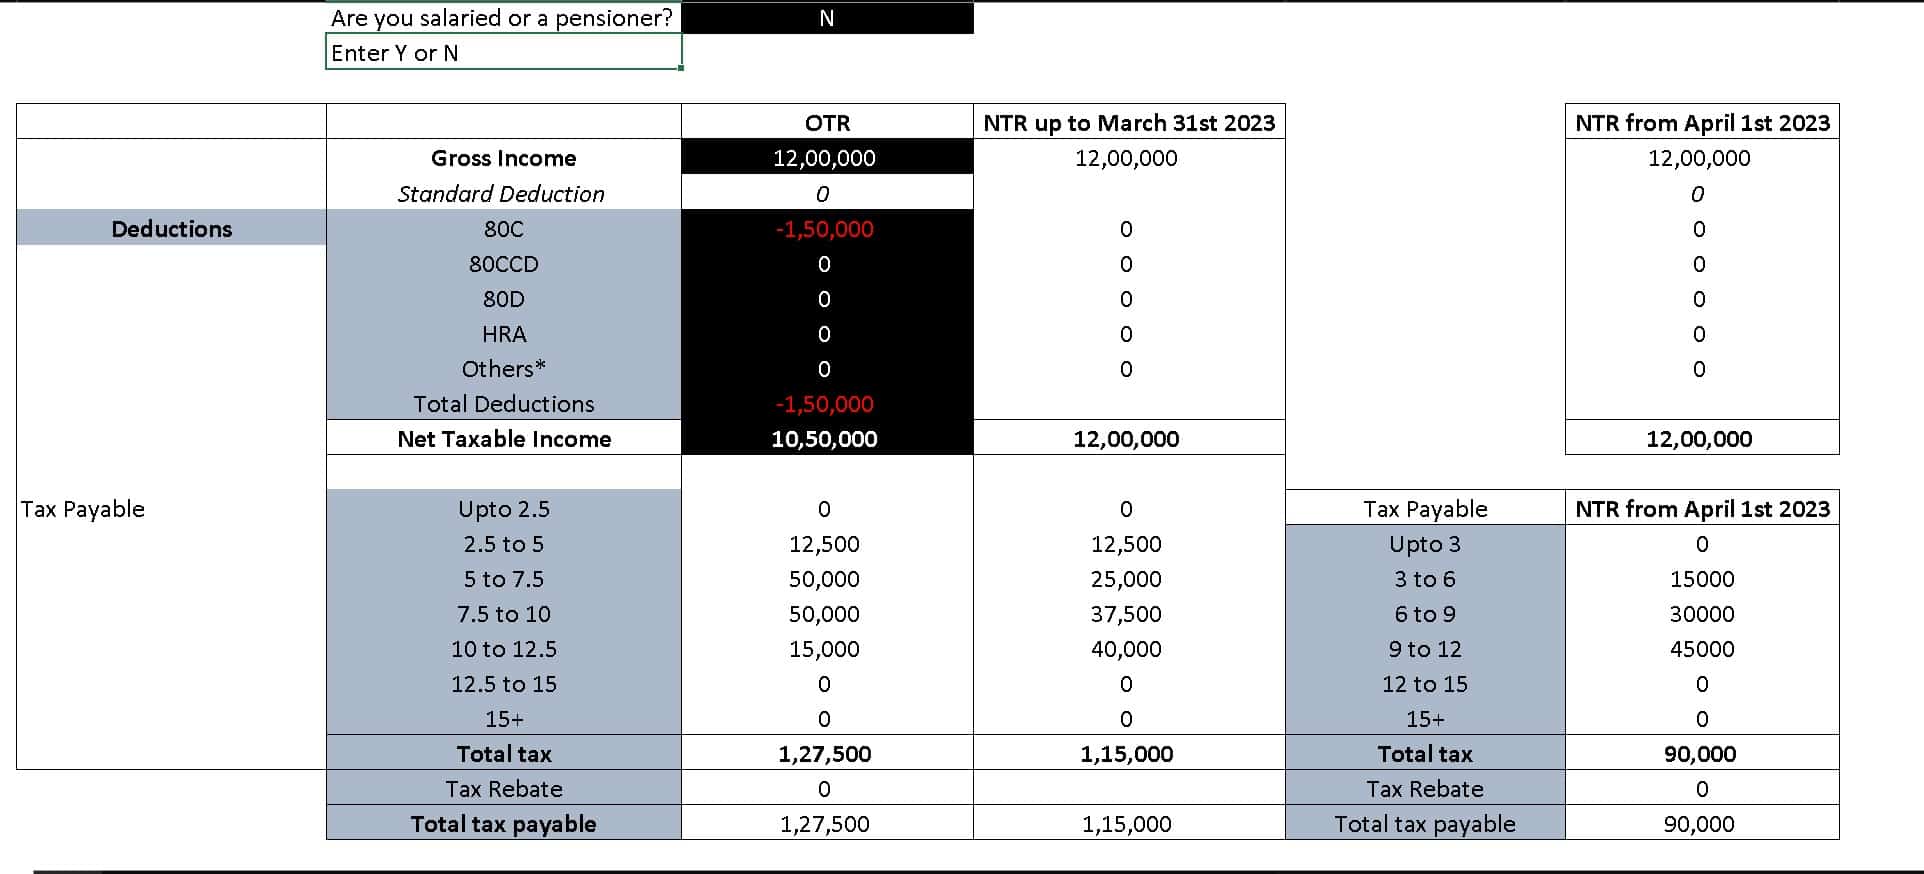 Screenshot of new tax regime vs old tax regime comparison table